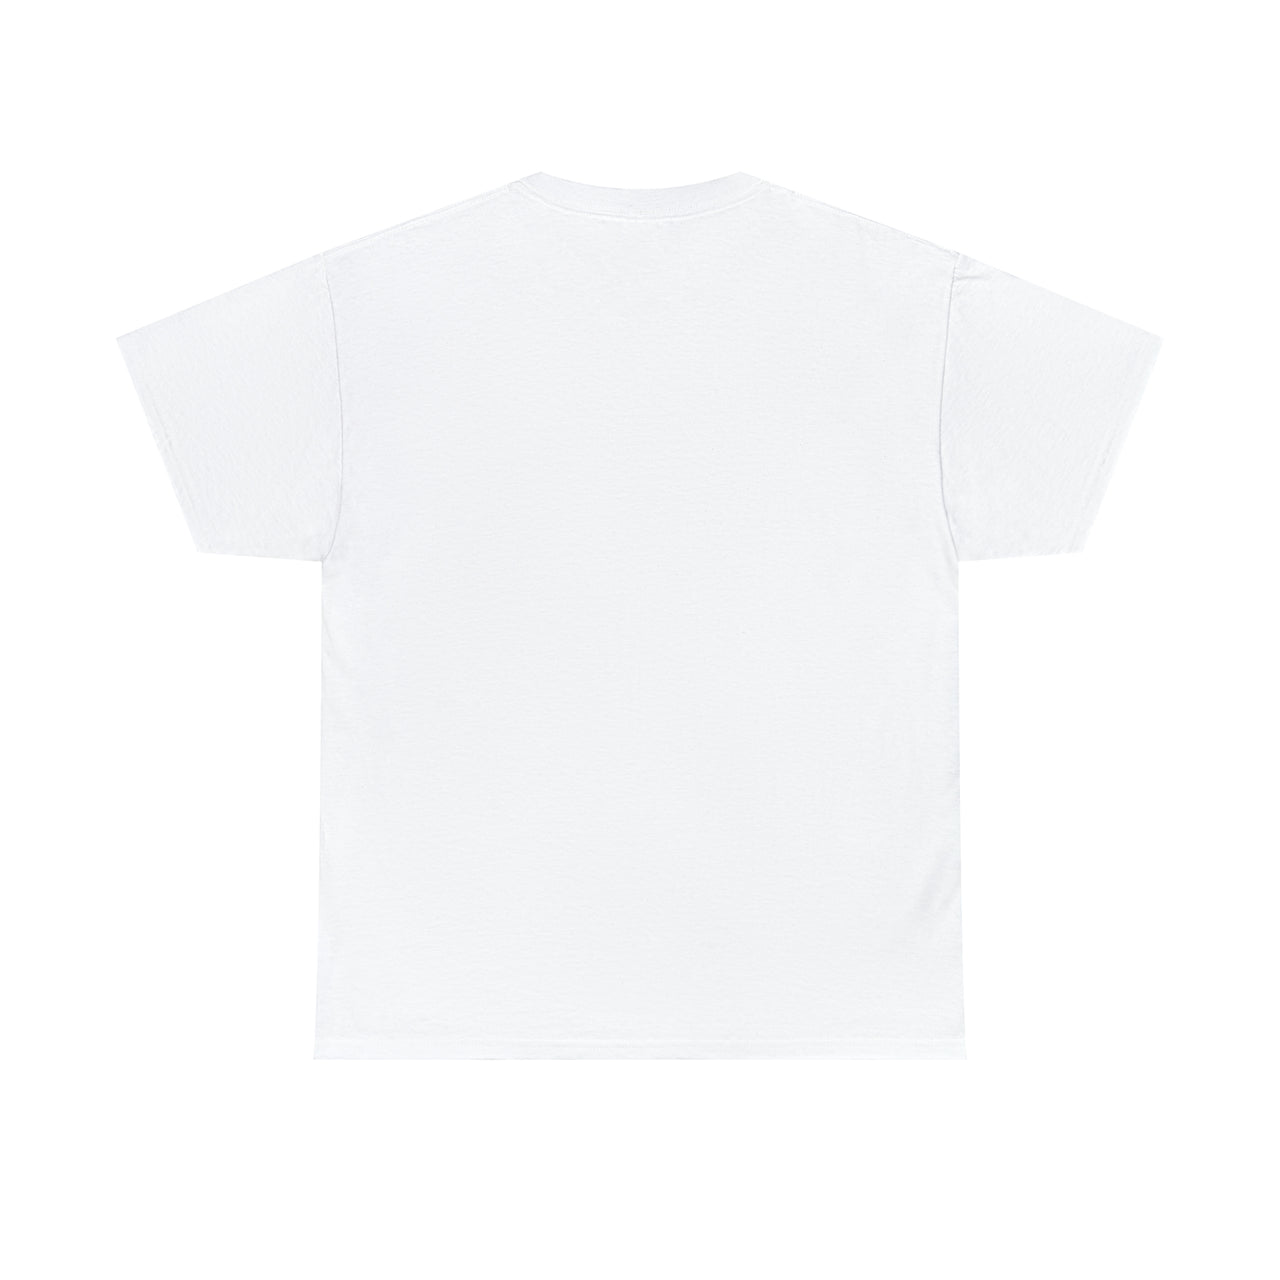 FREE TRUMP Mugshot T-Shirt in White